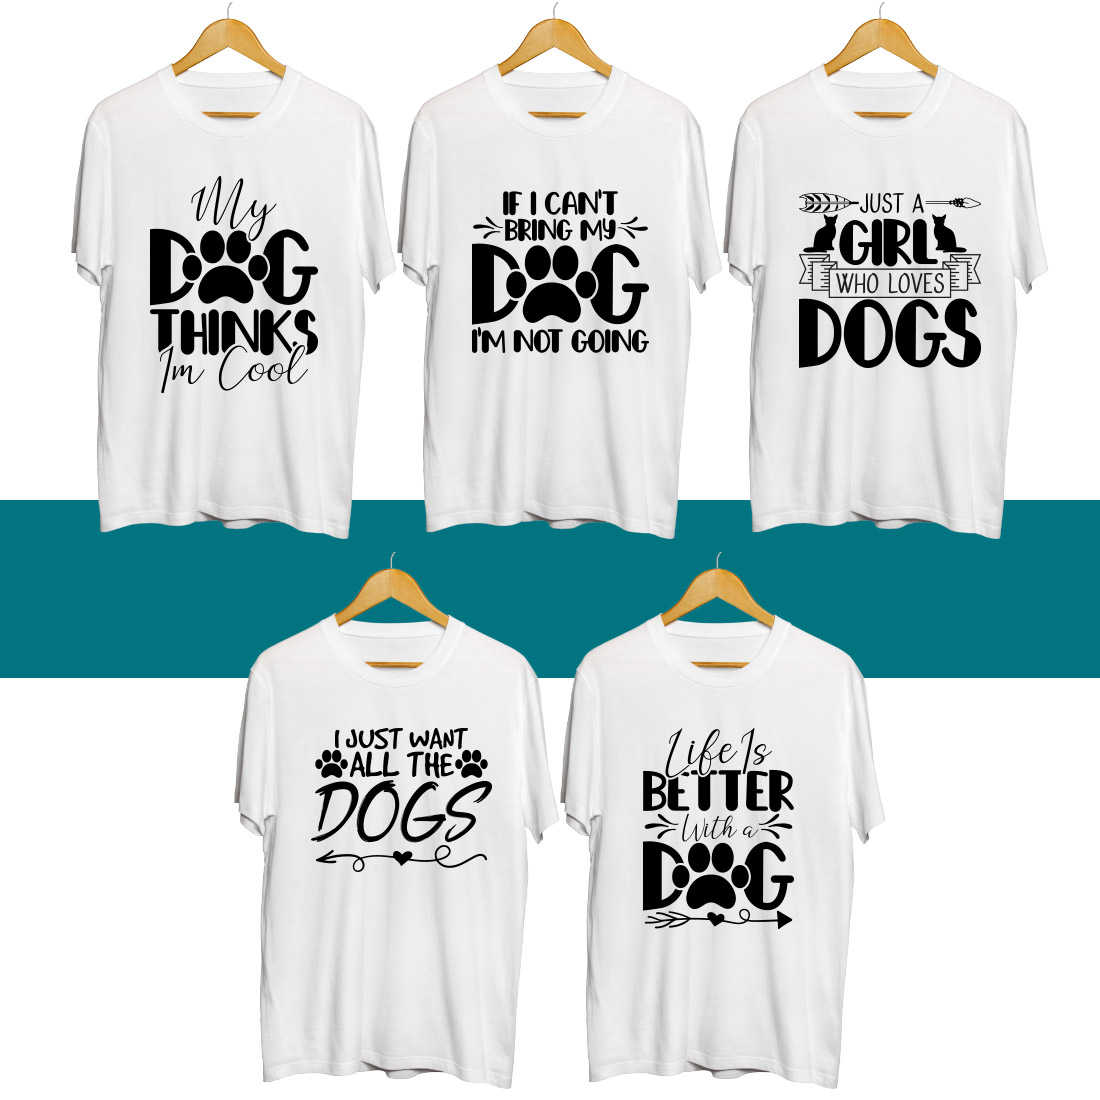 Dog SVG T Shirt Designs Bundle cover image.